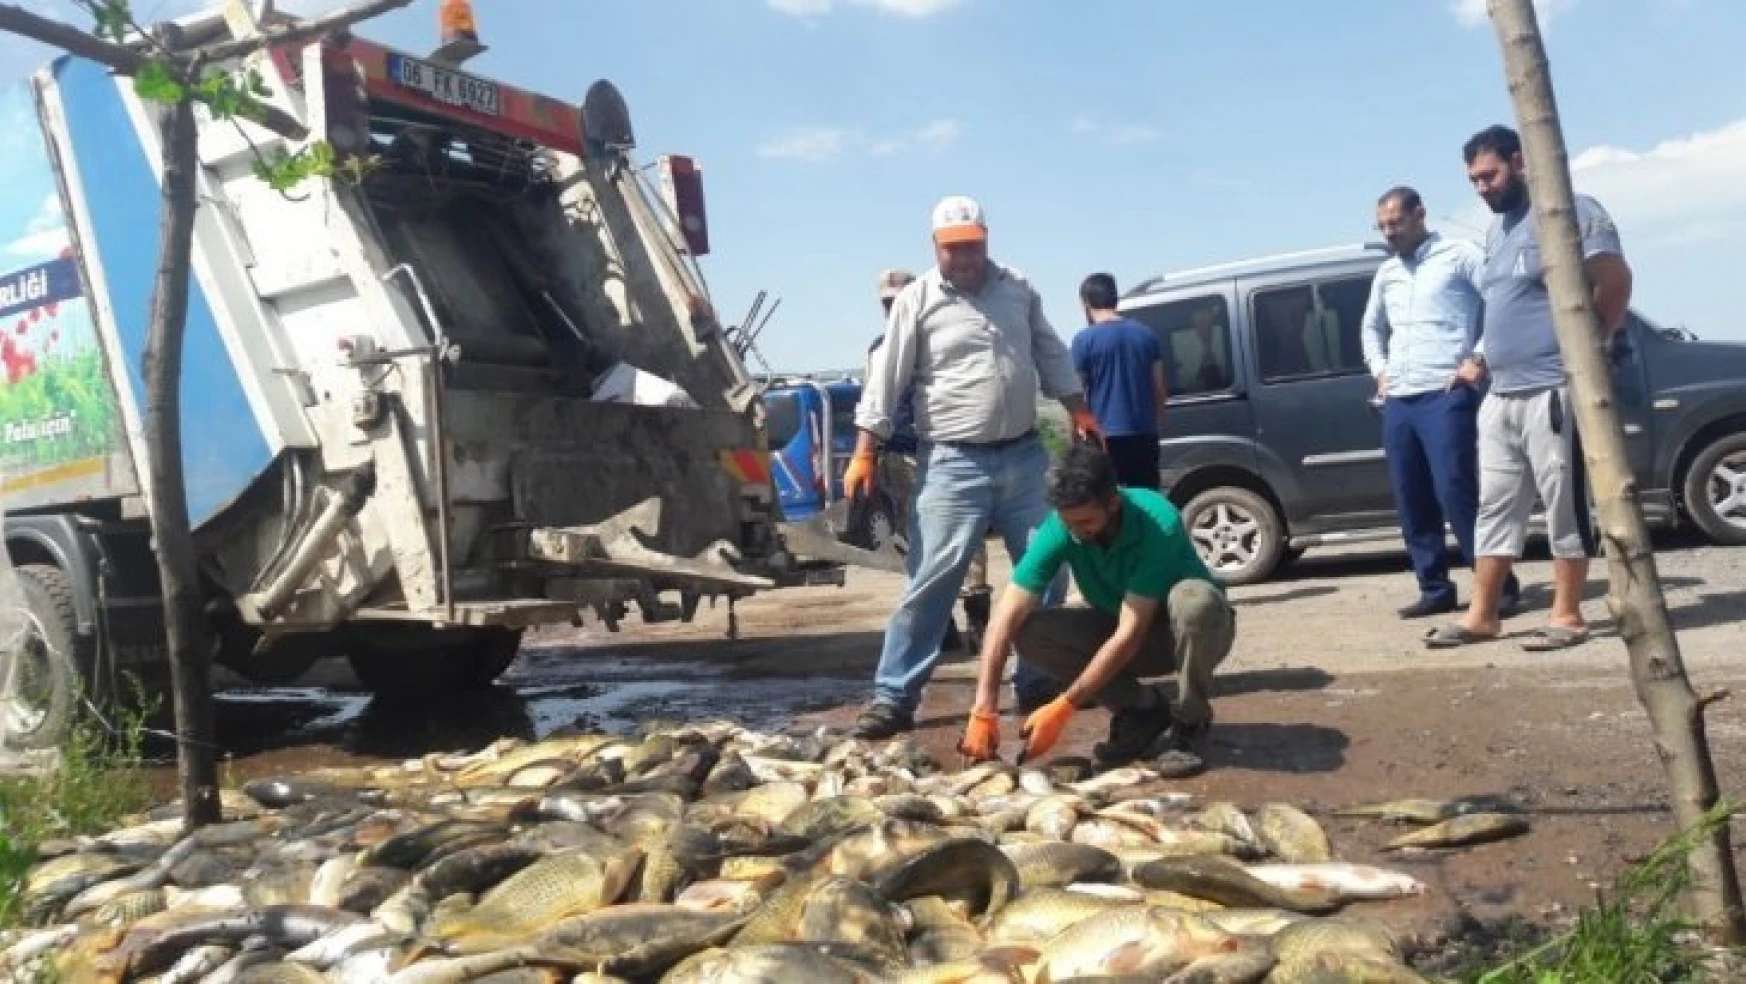 Bir Kaçak Balıkçılarımız Eksikti, Bu Kez de 1 Ton 200 Kilo Balık Çöp Oldu